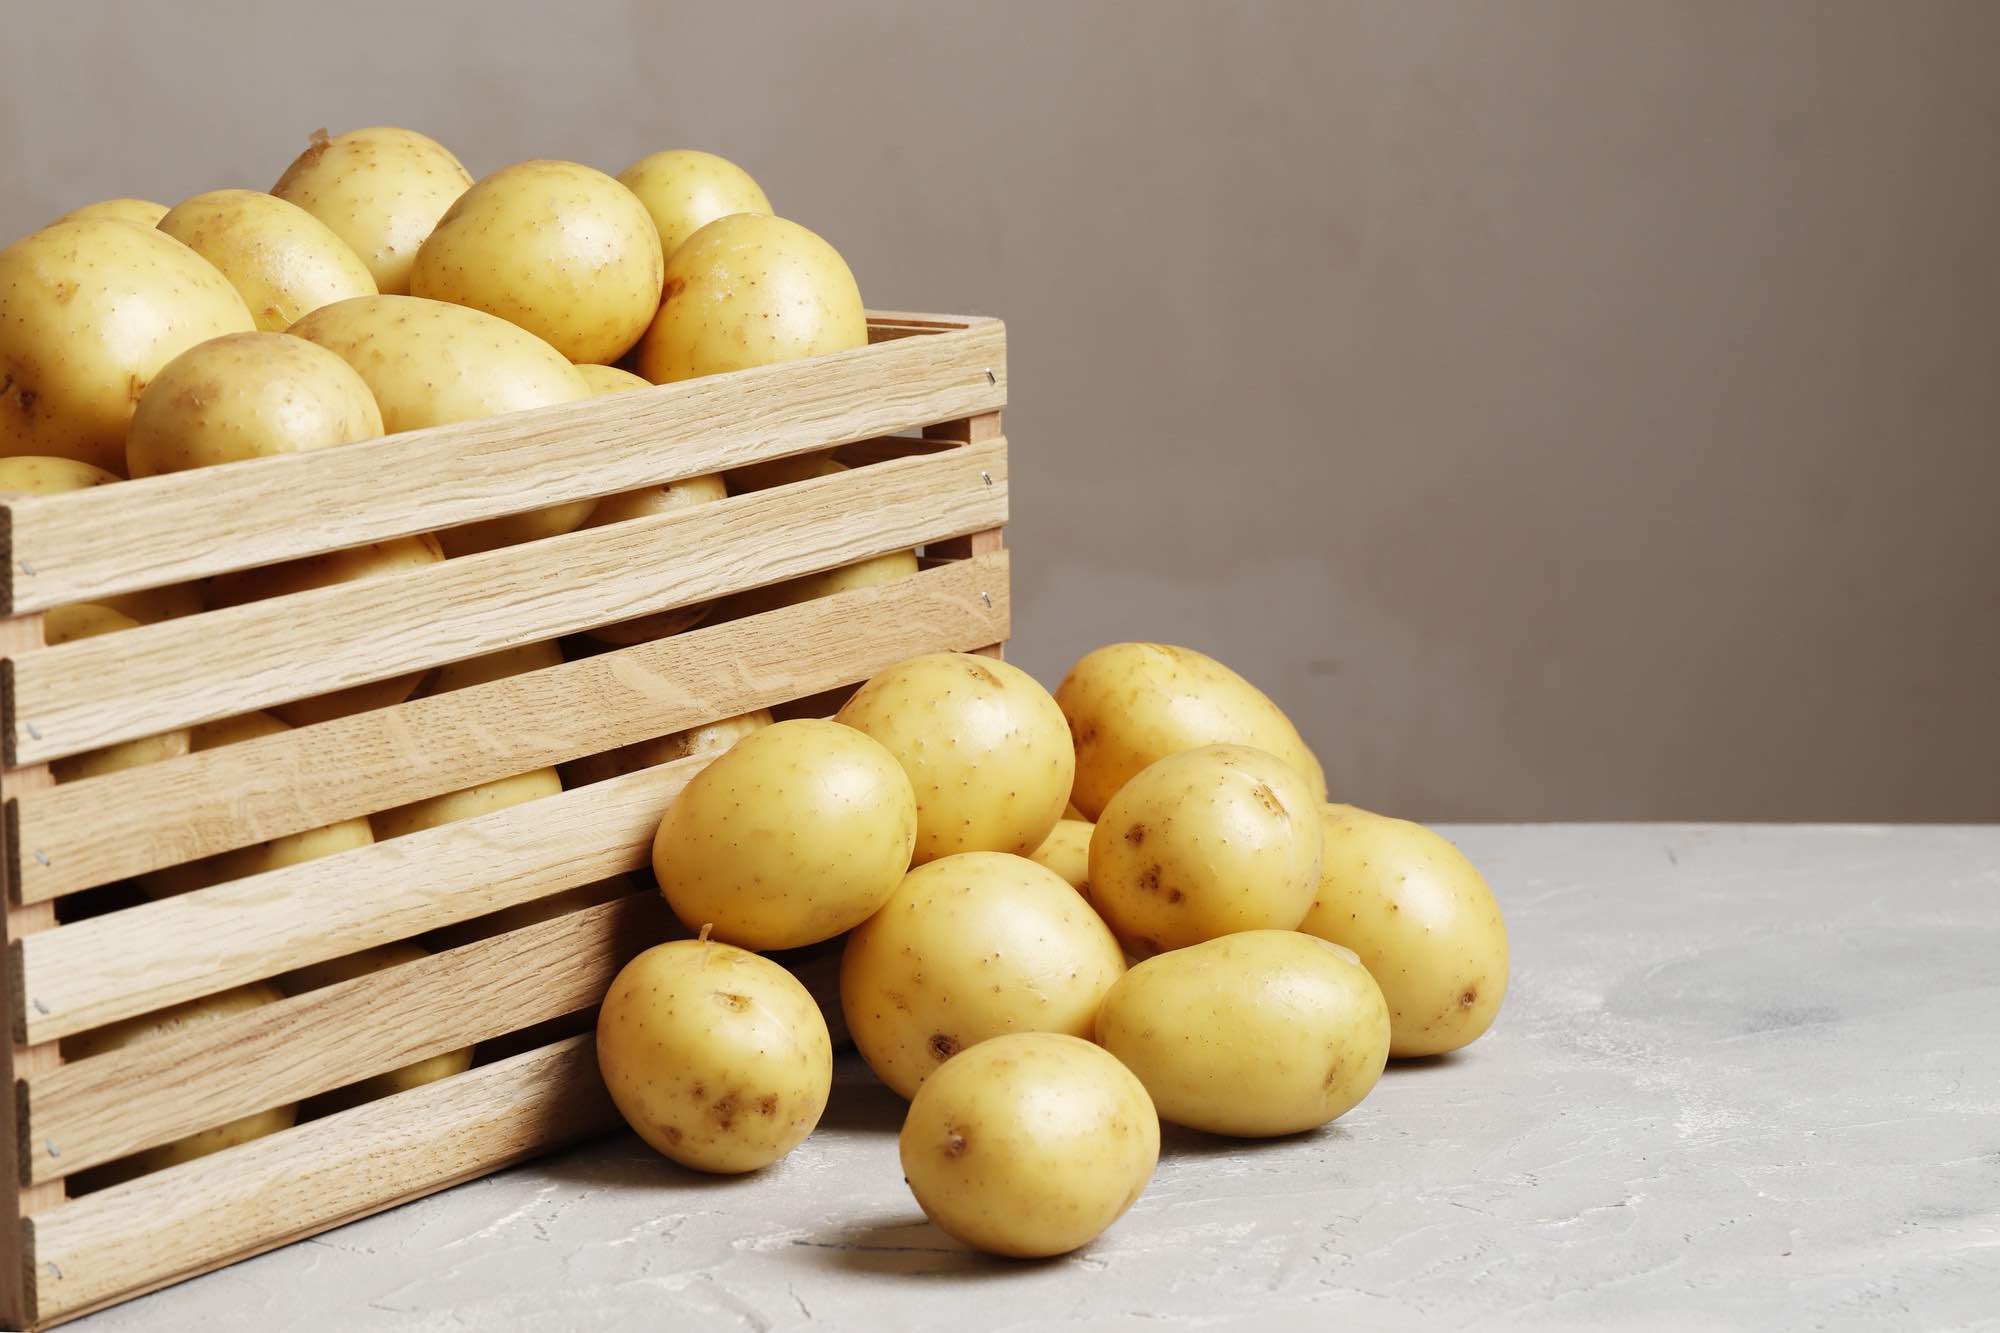 الزراعة: تحقيق رقم قياسي في إنتاج البطاطس في مصر بوصوله إلى 6.5 مليون طن